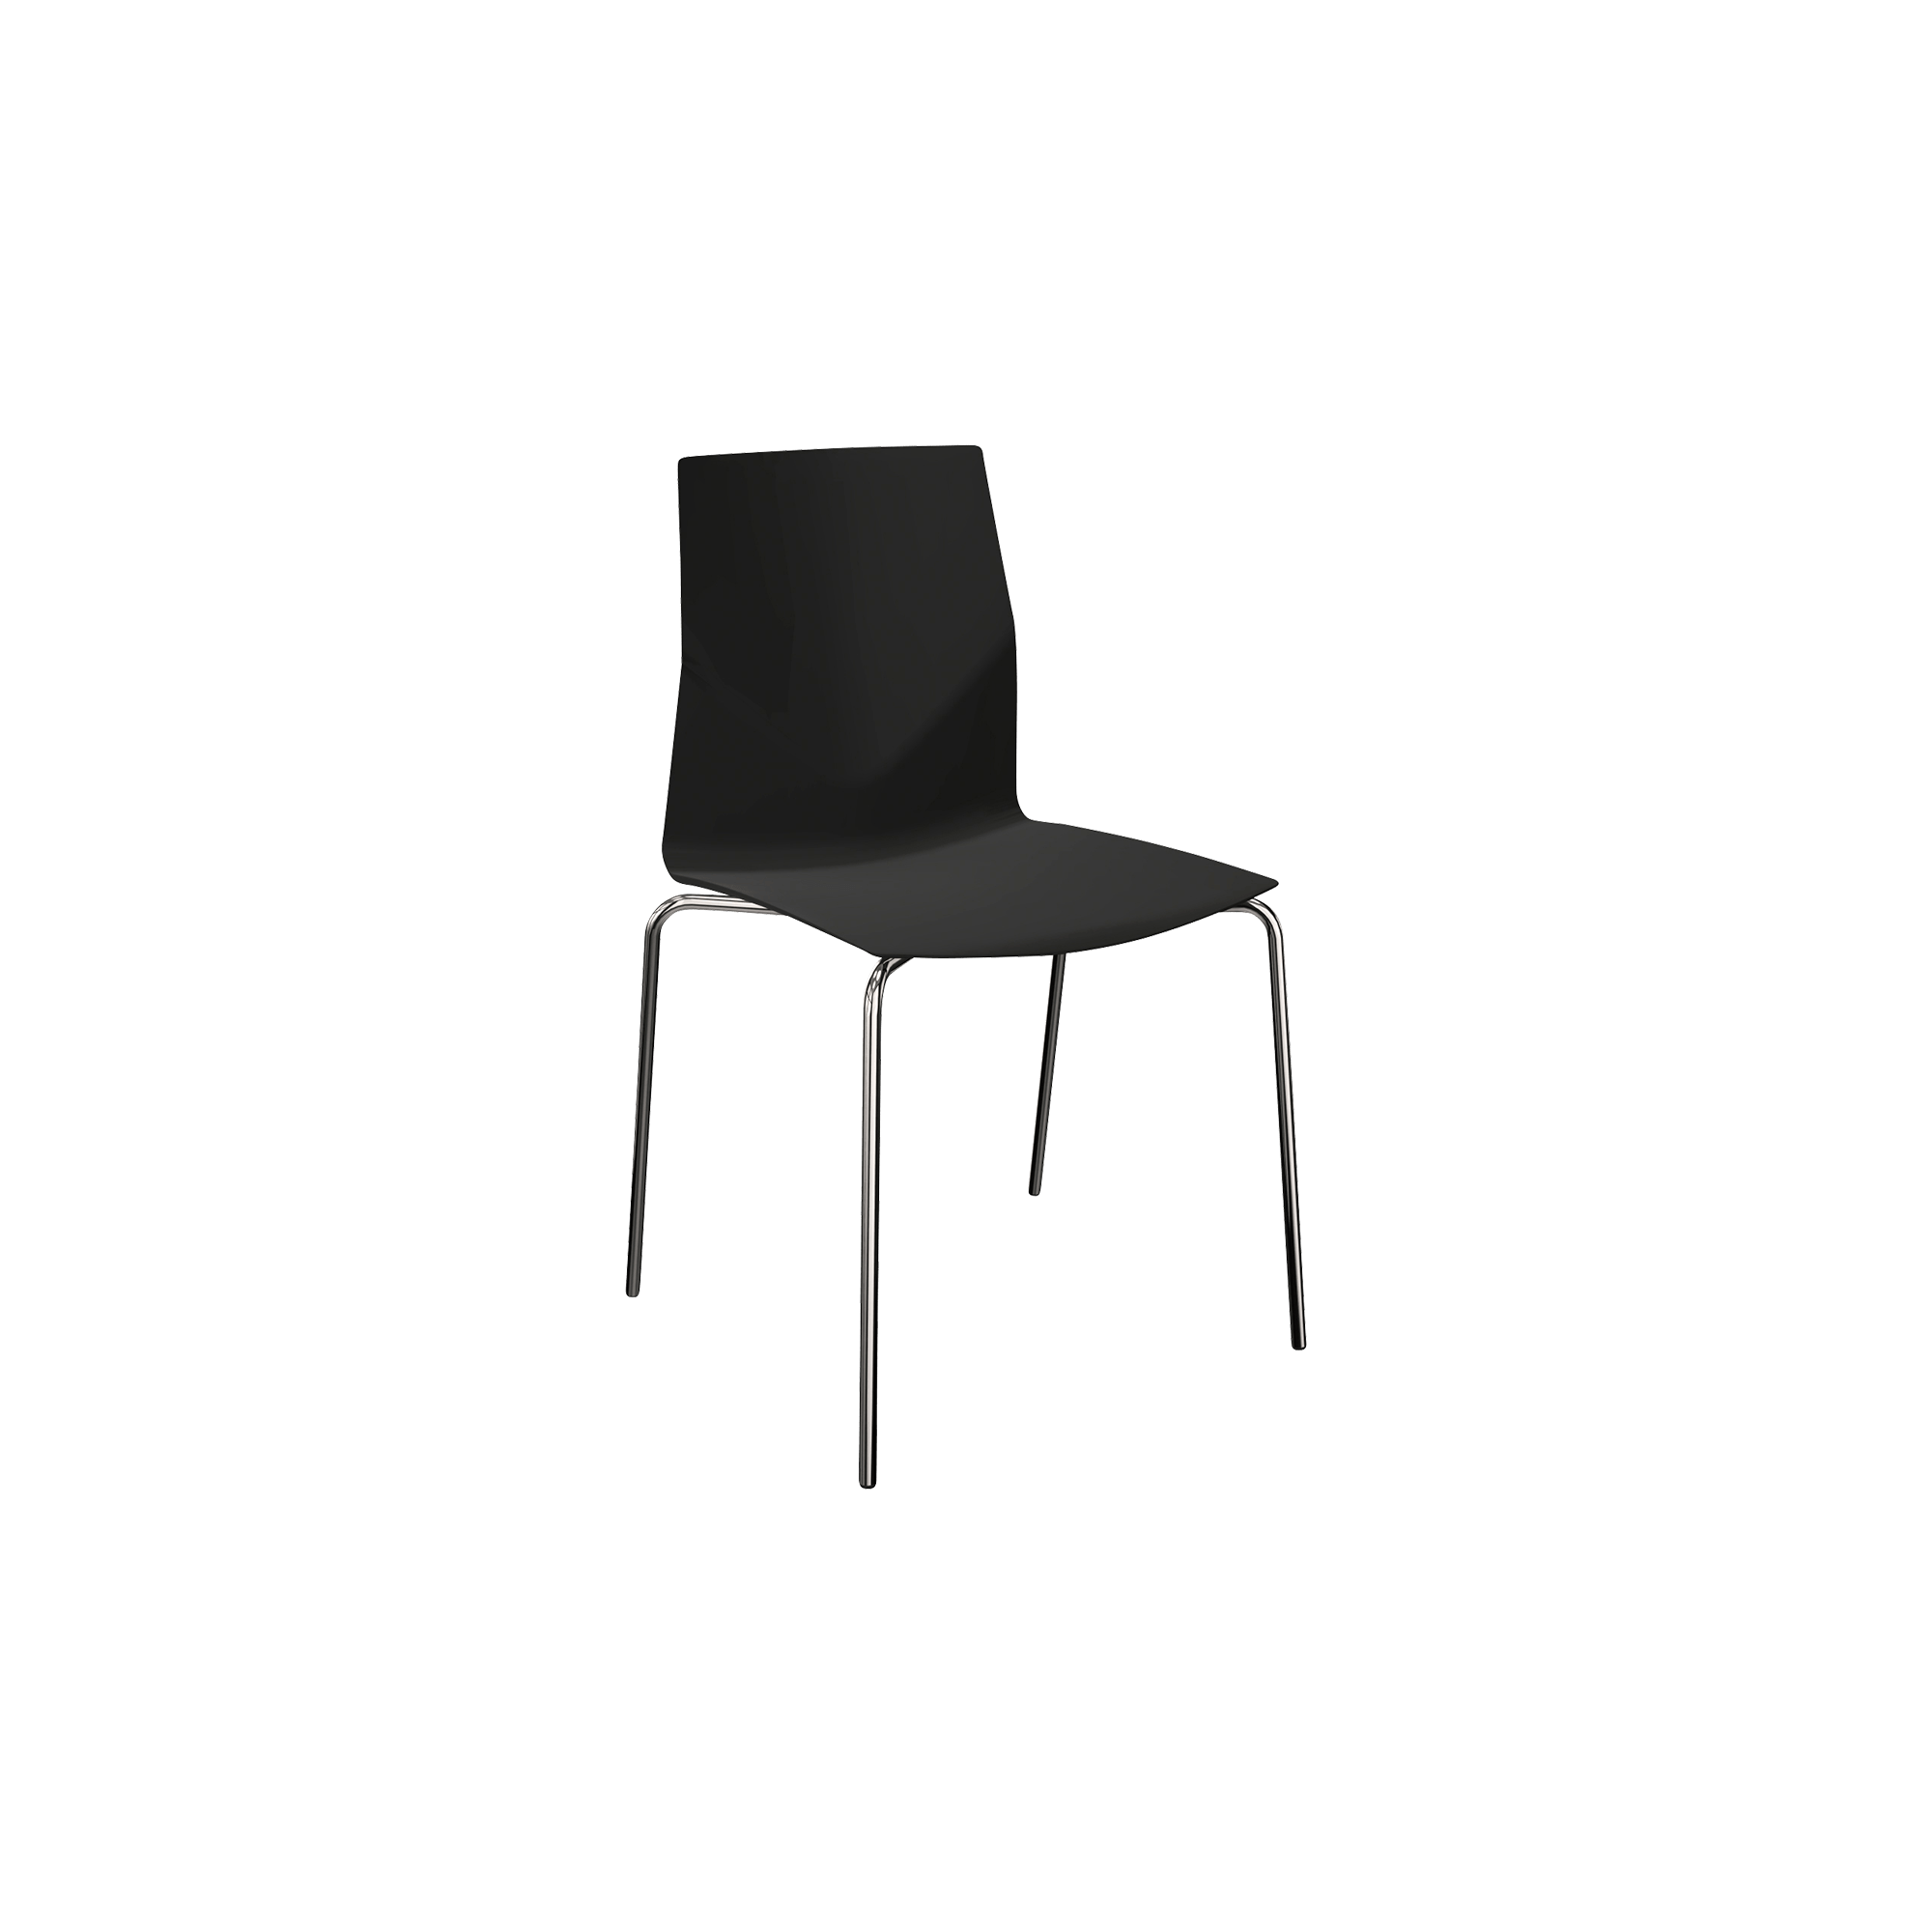 designer desk chair